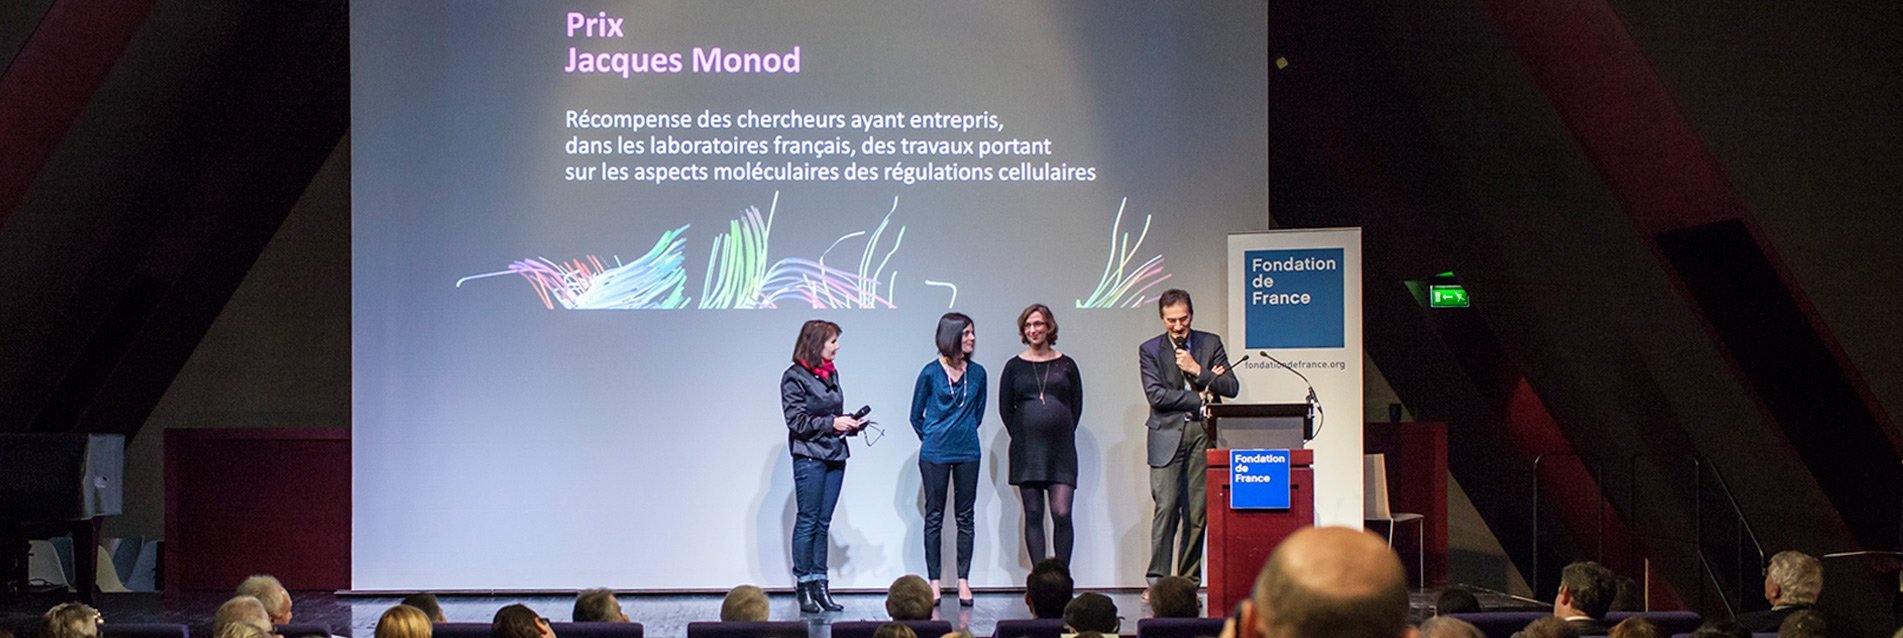 Fondation Jacques Monod